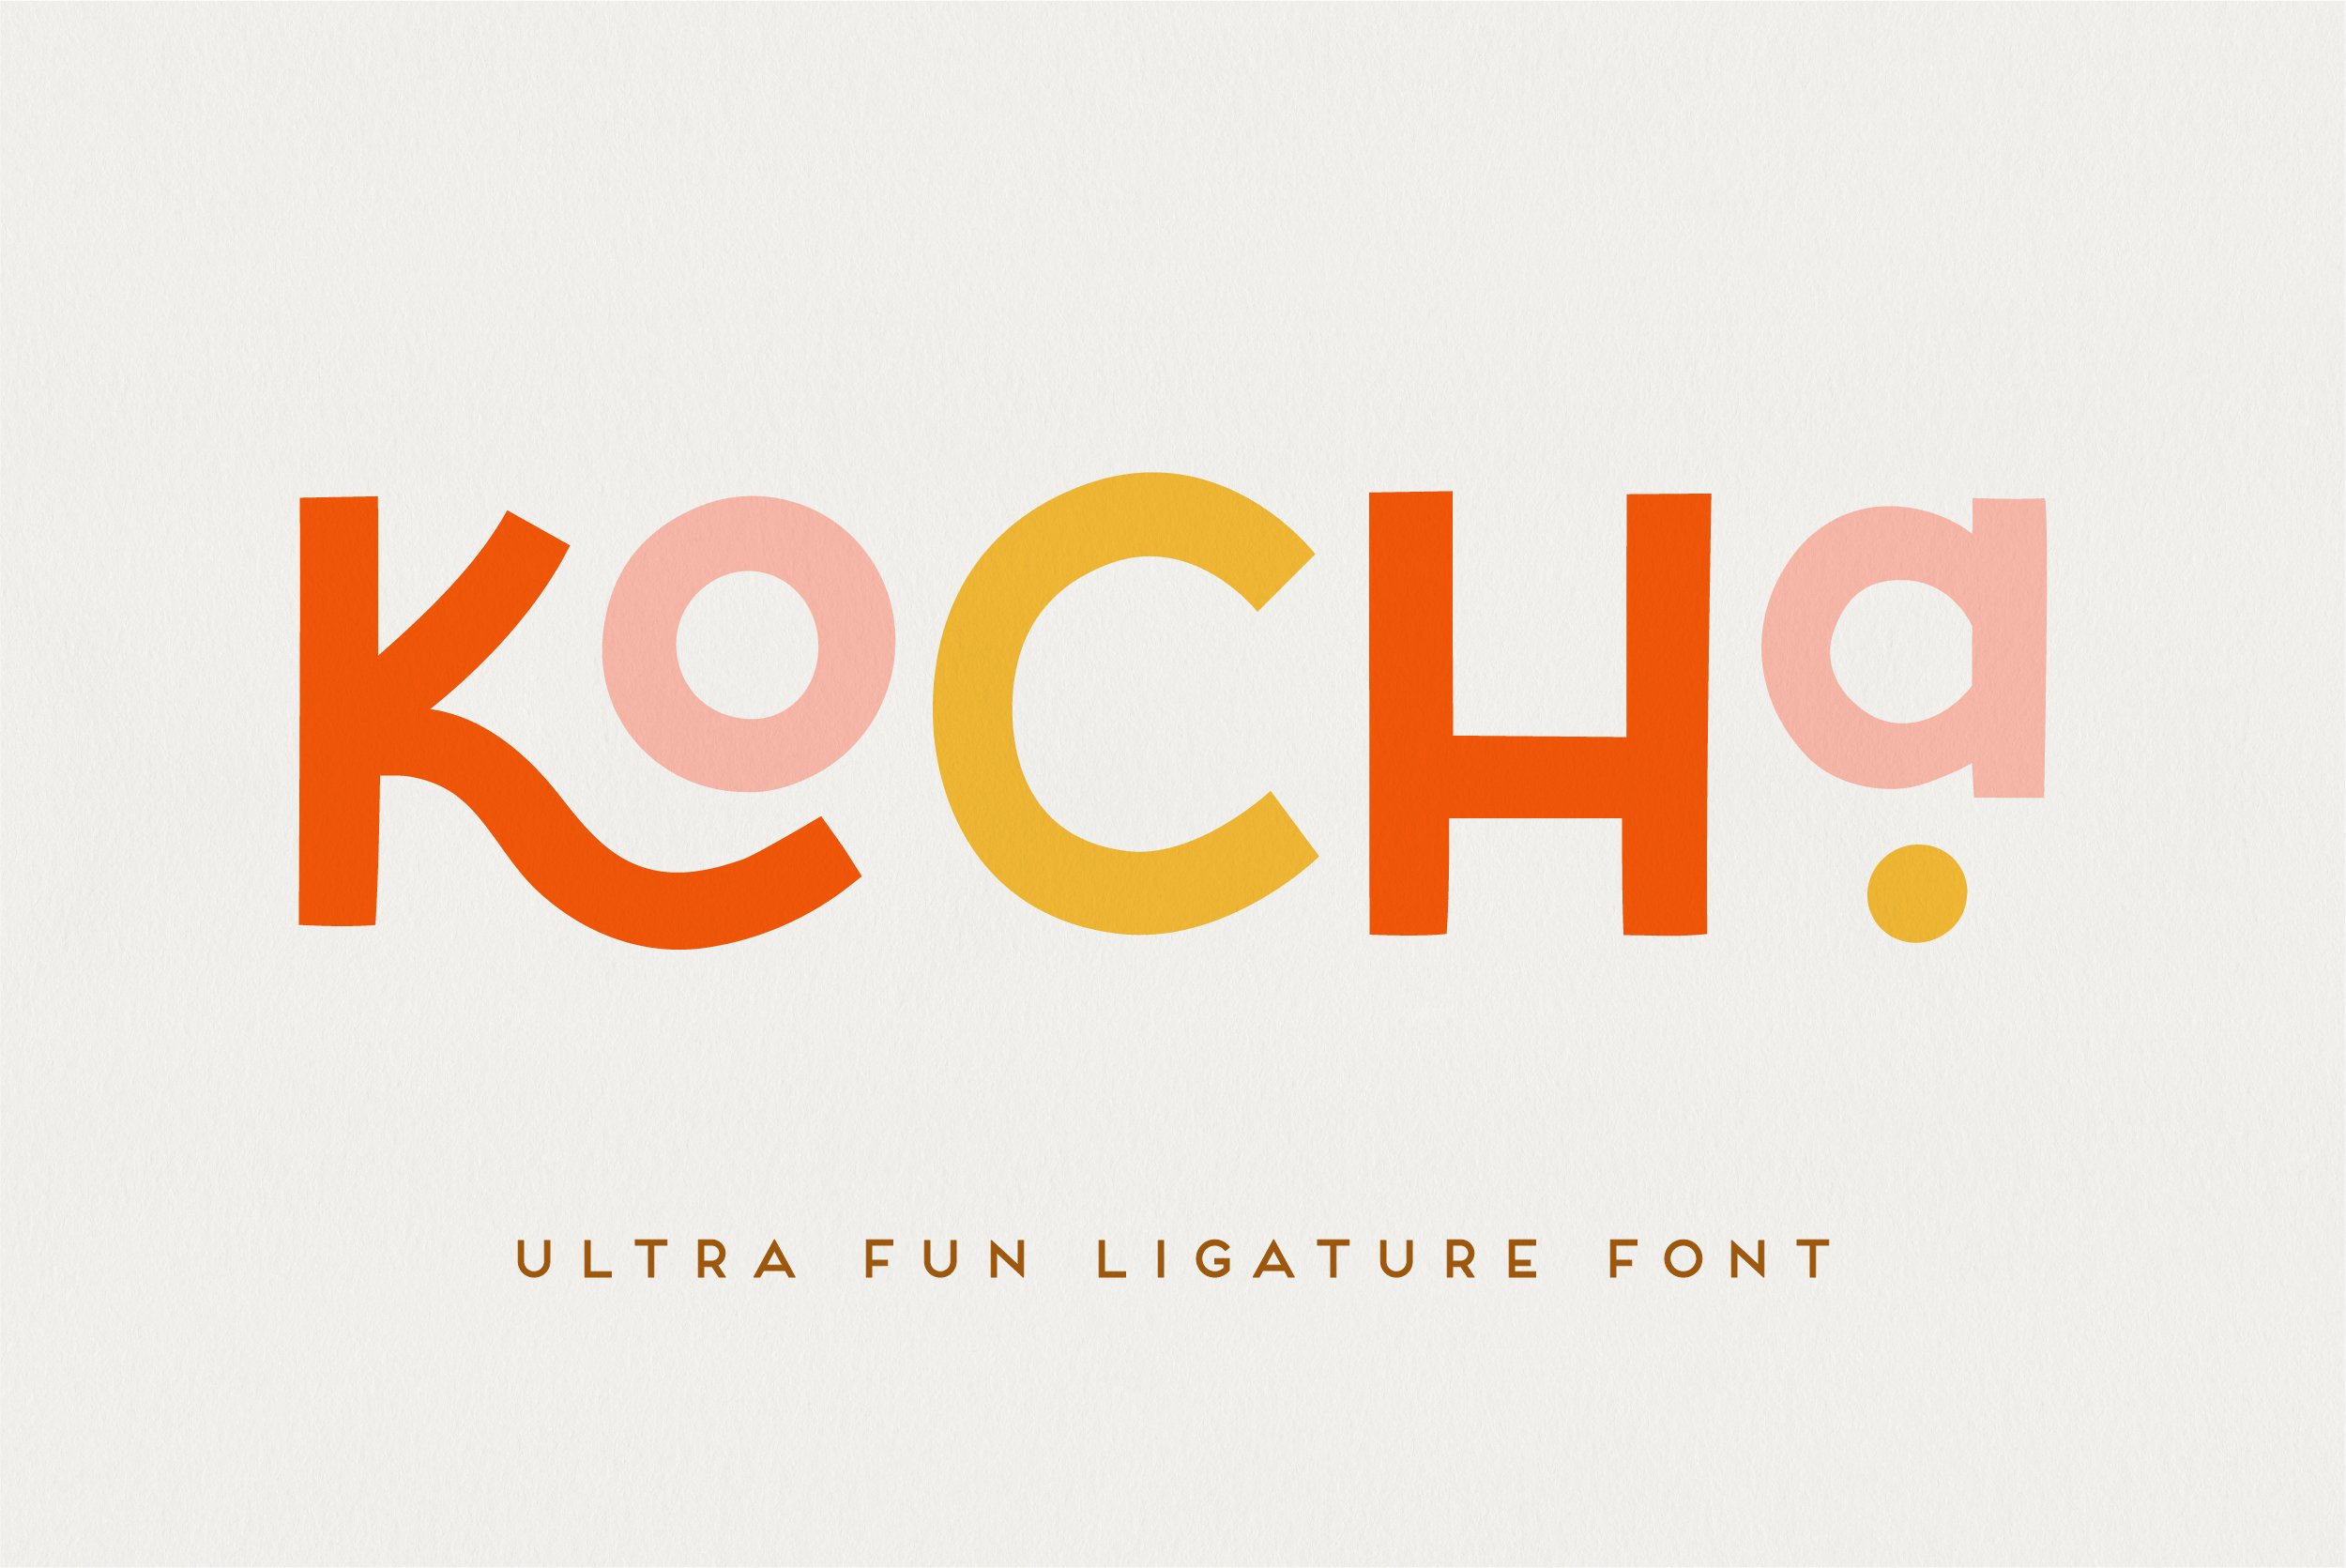 Kocha | Playful Ligature Font cover image.